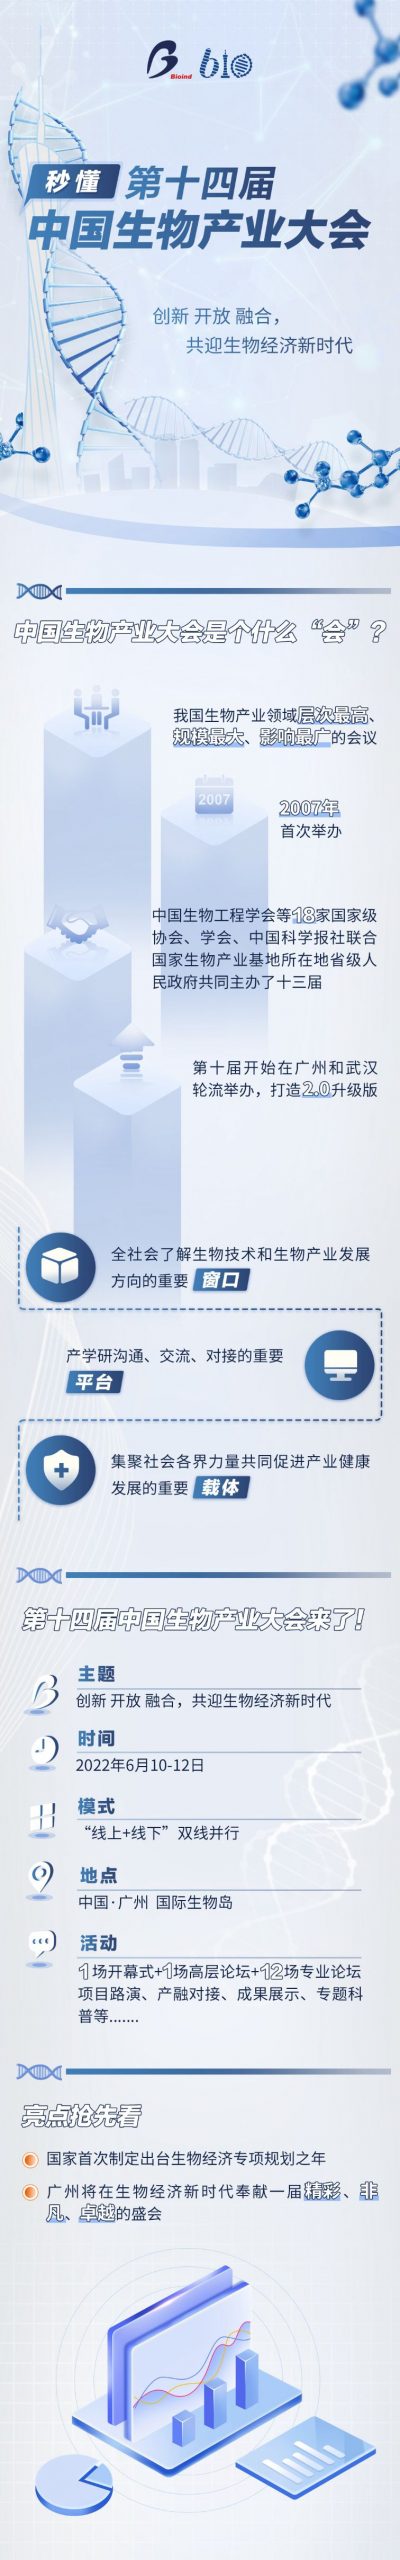 第十四届中国生物产业大会海报